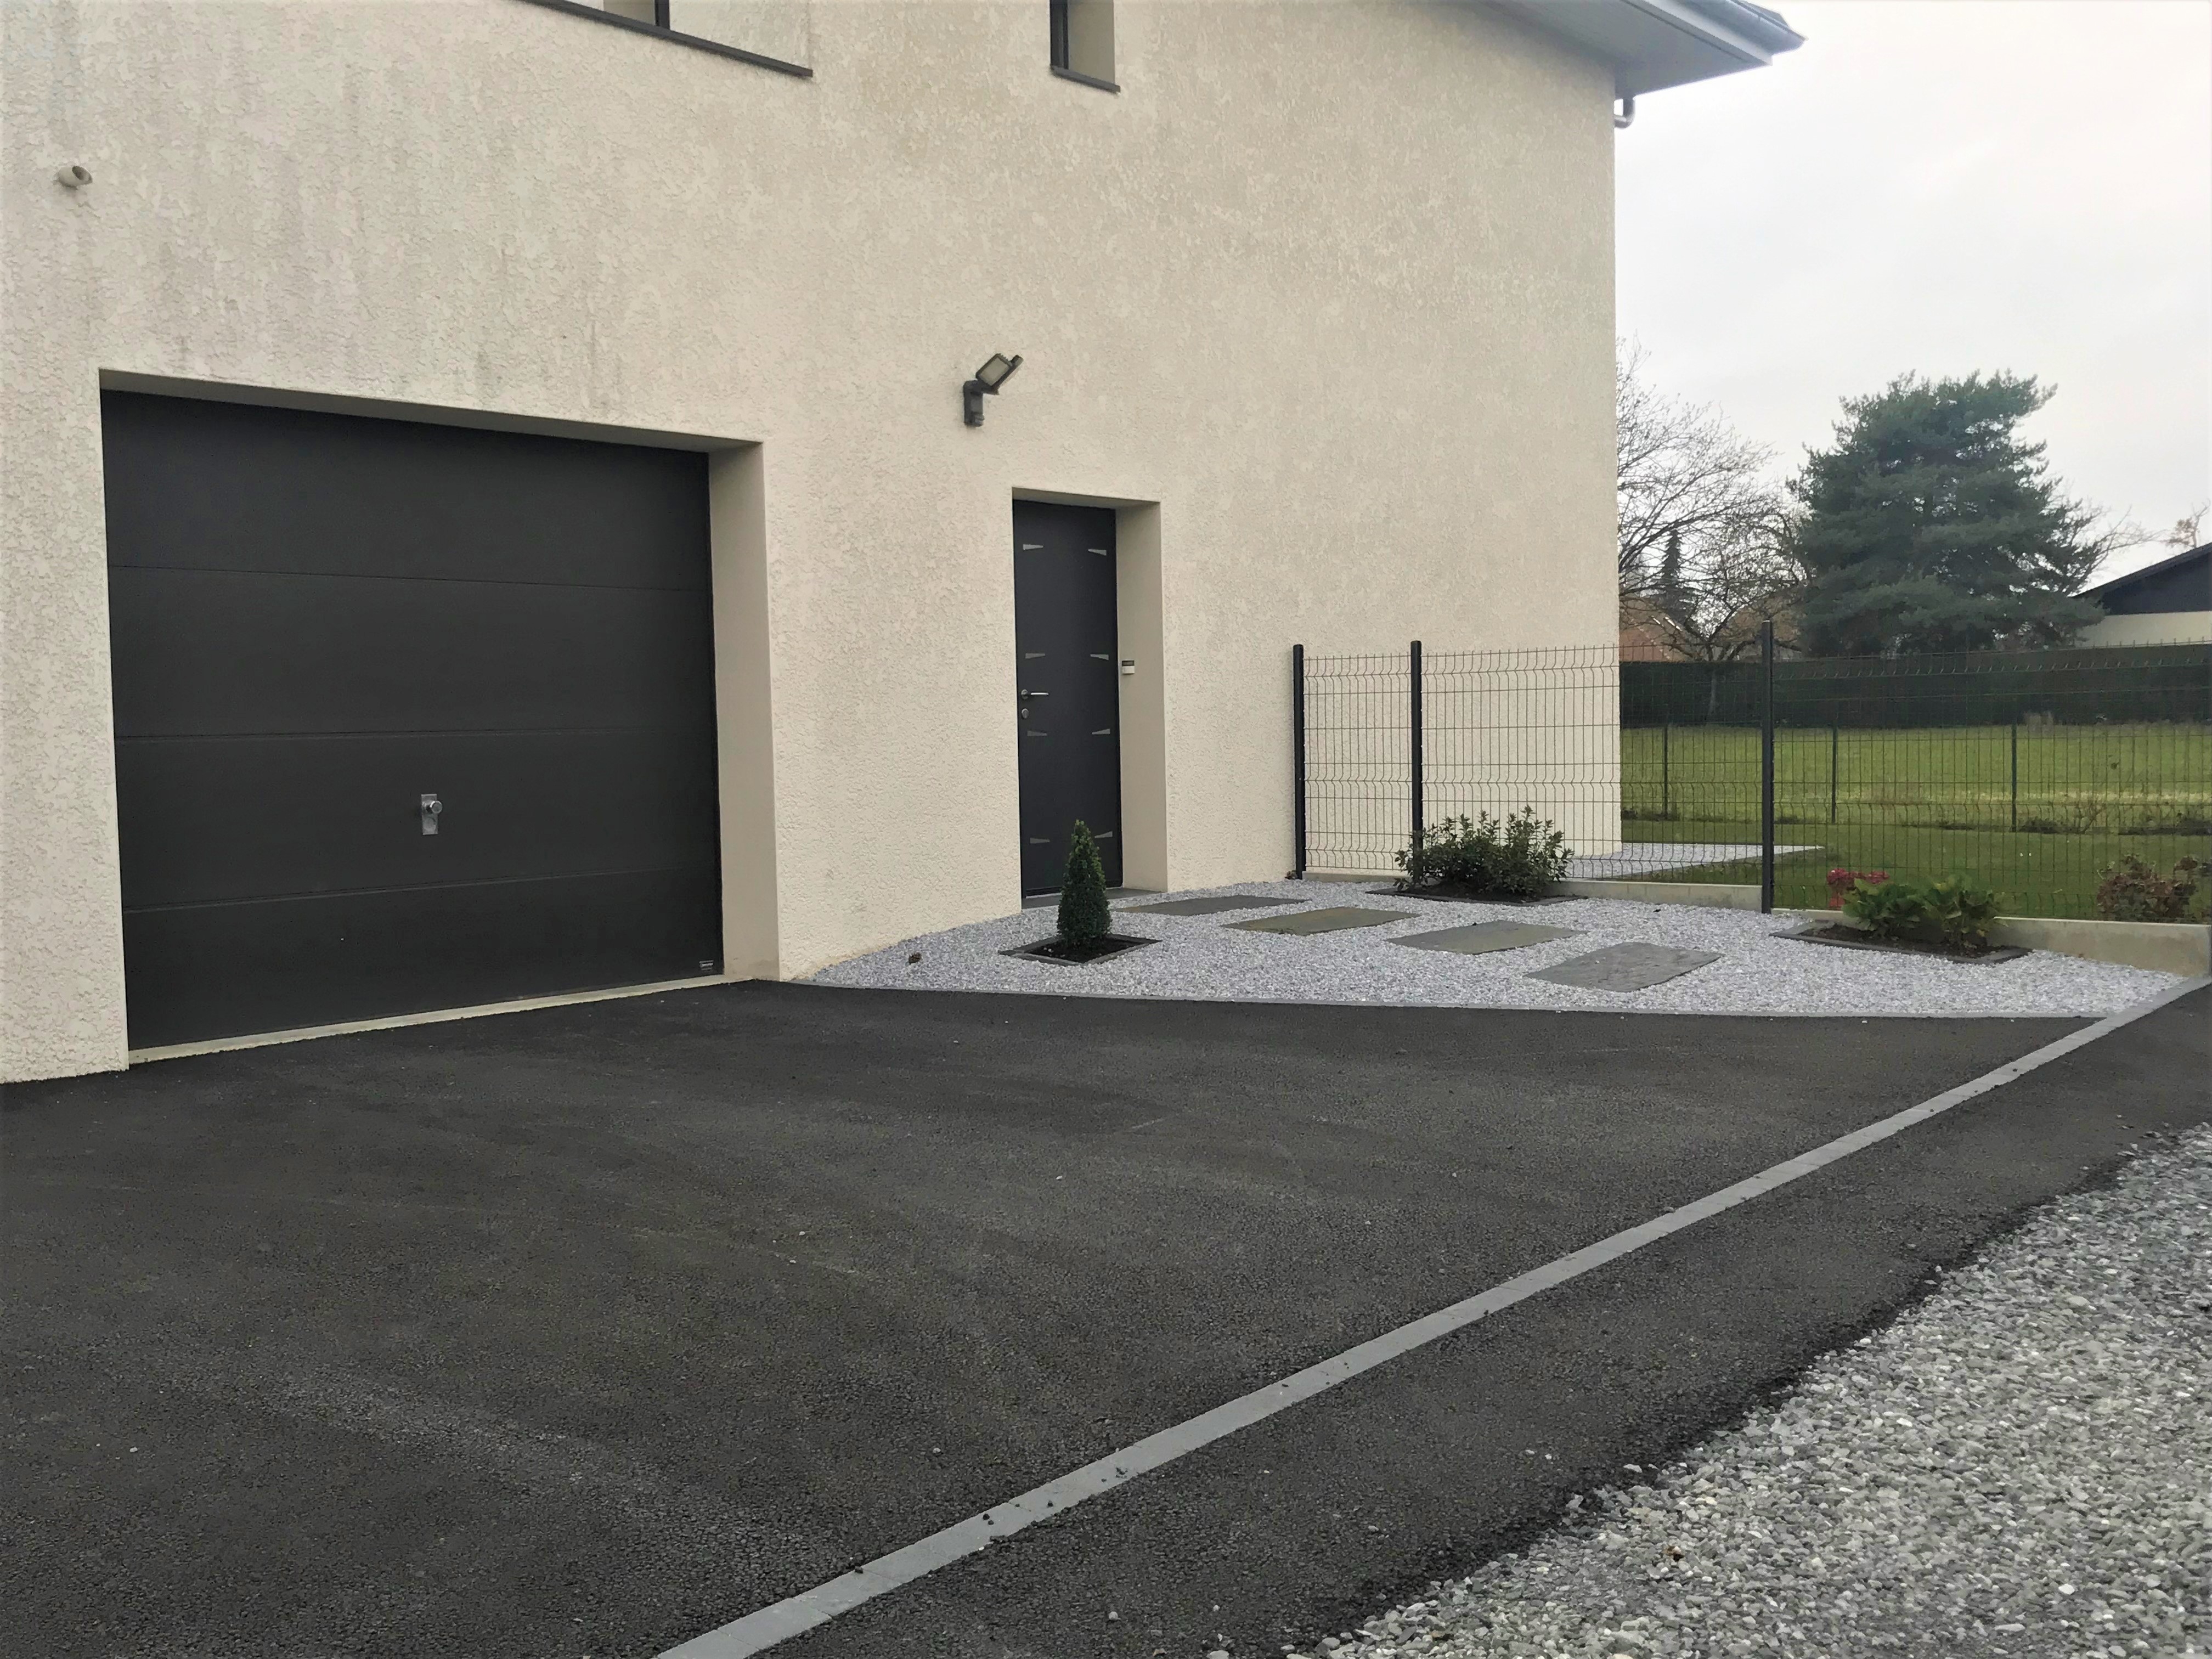 Conception Alle de garage en Alvostar et enrob noir  chaud - Entreprise Tardy-Thivent  Publier cre le 12/02/2019